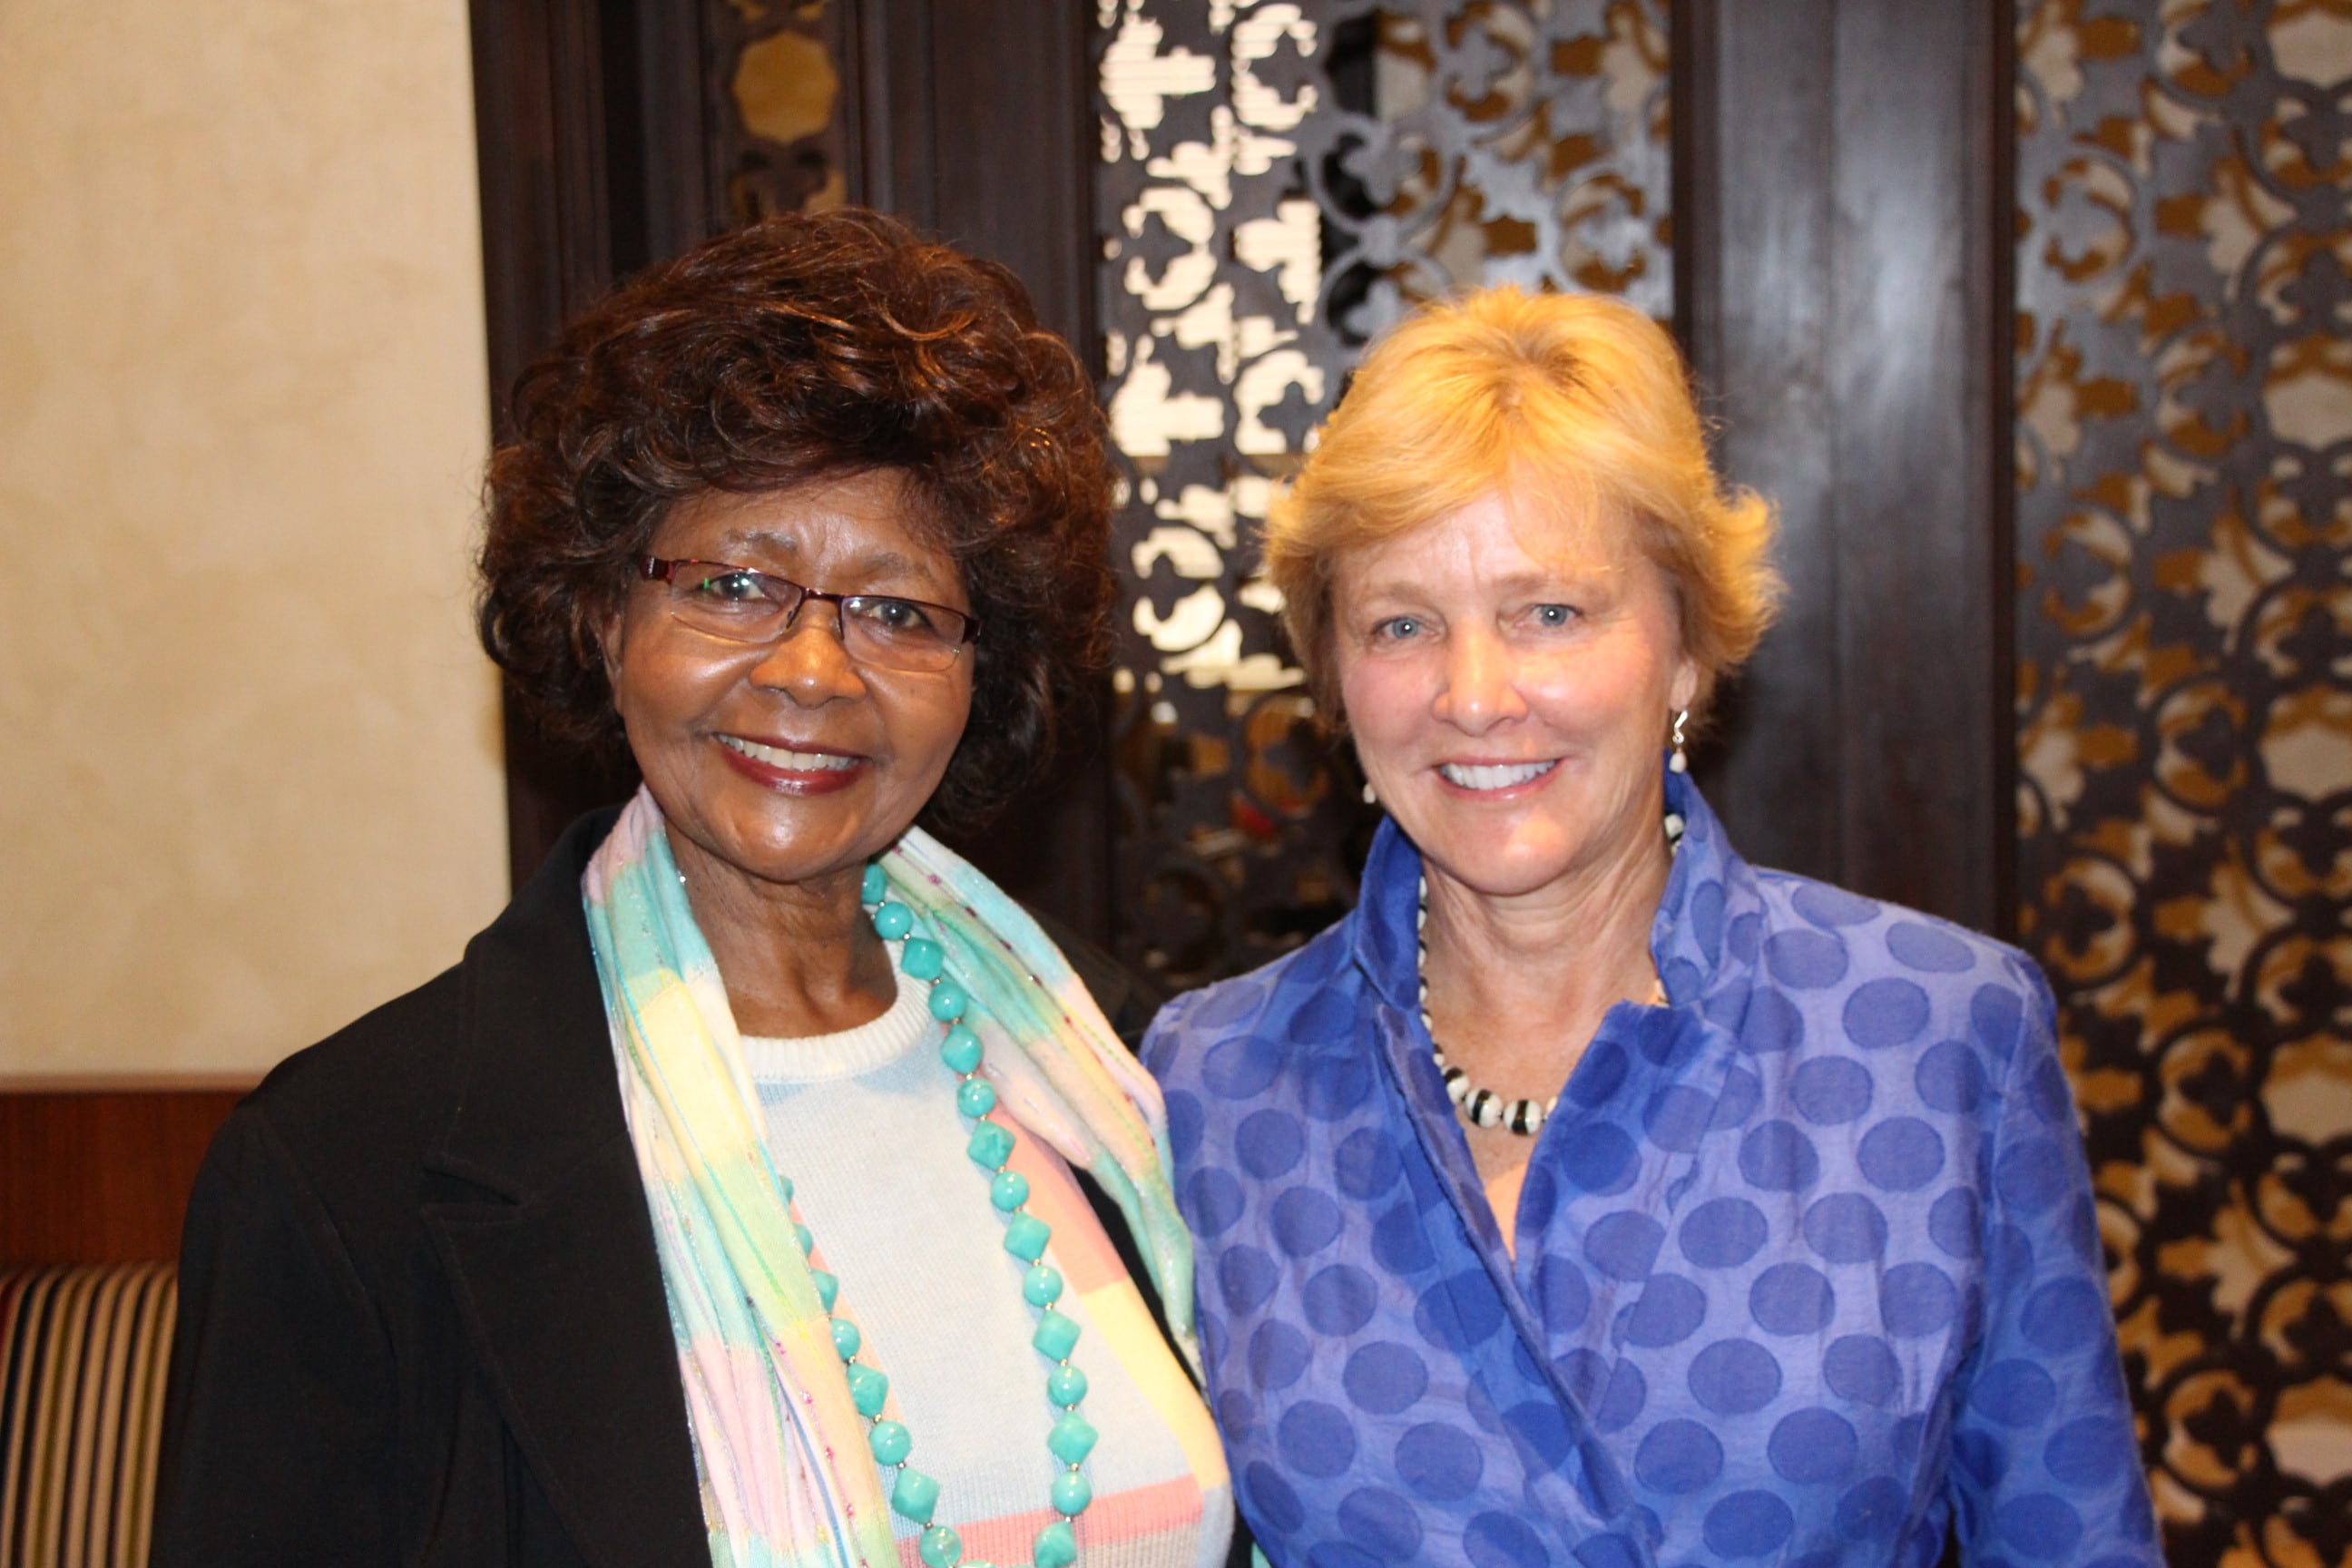 Nancy with Dr. Leah Marangu at ANU